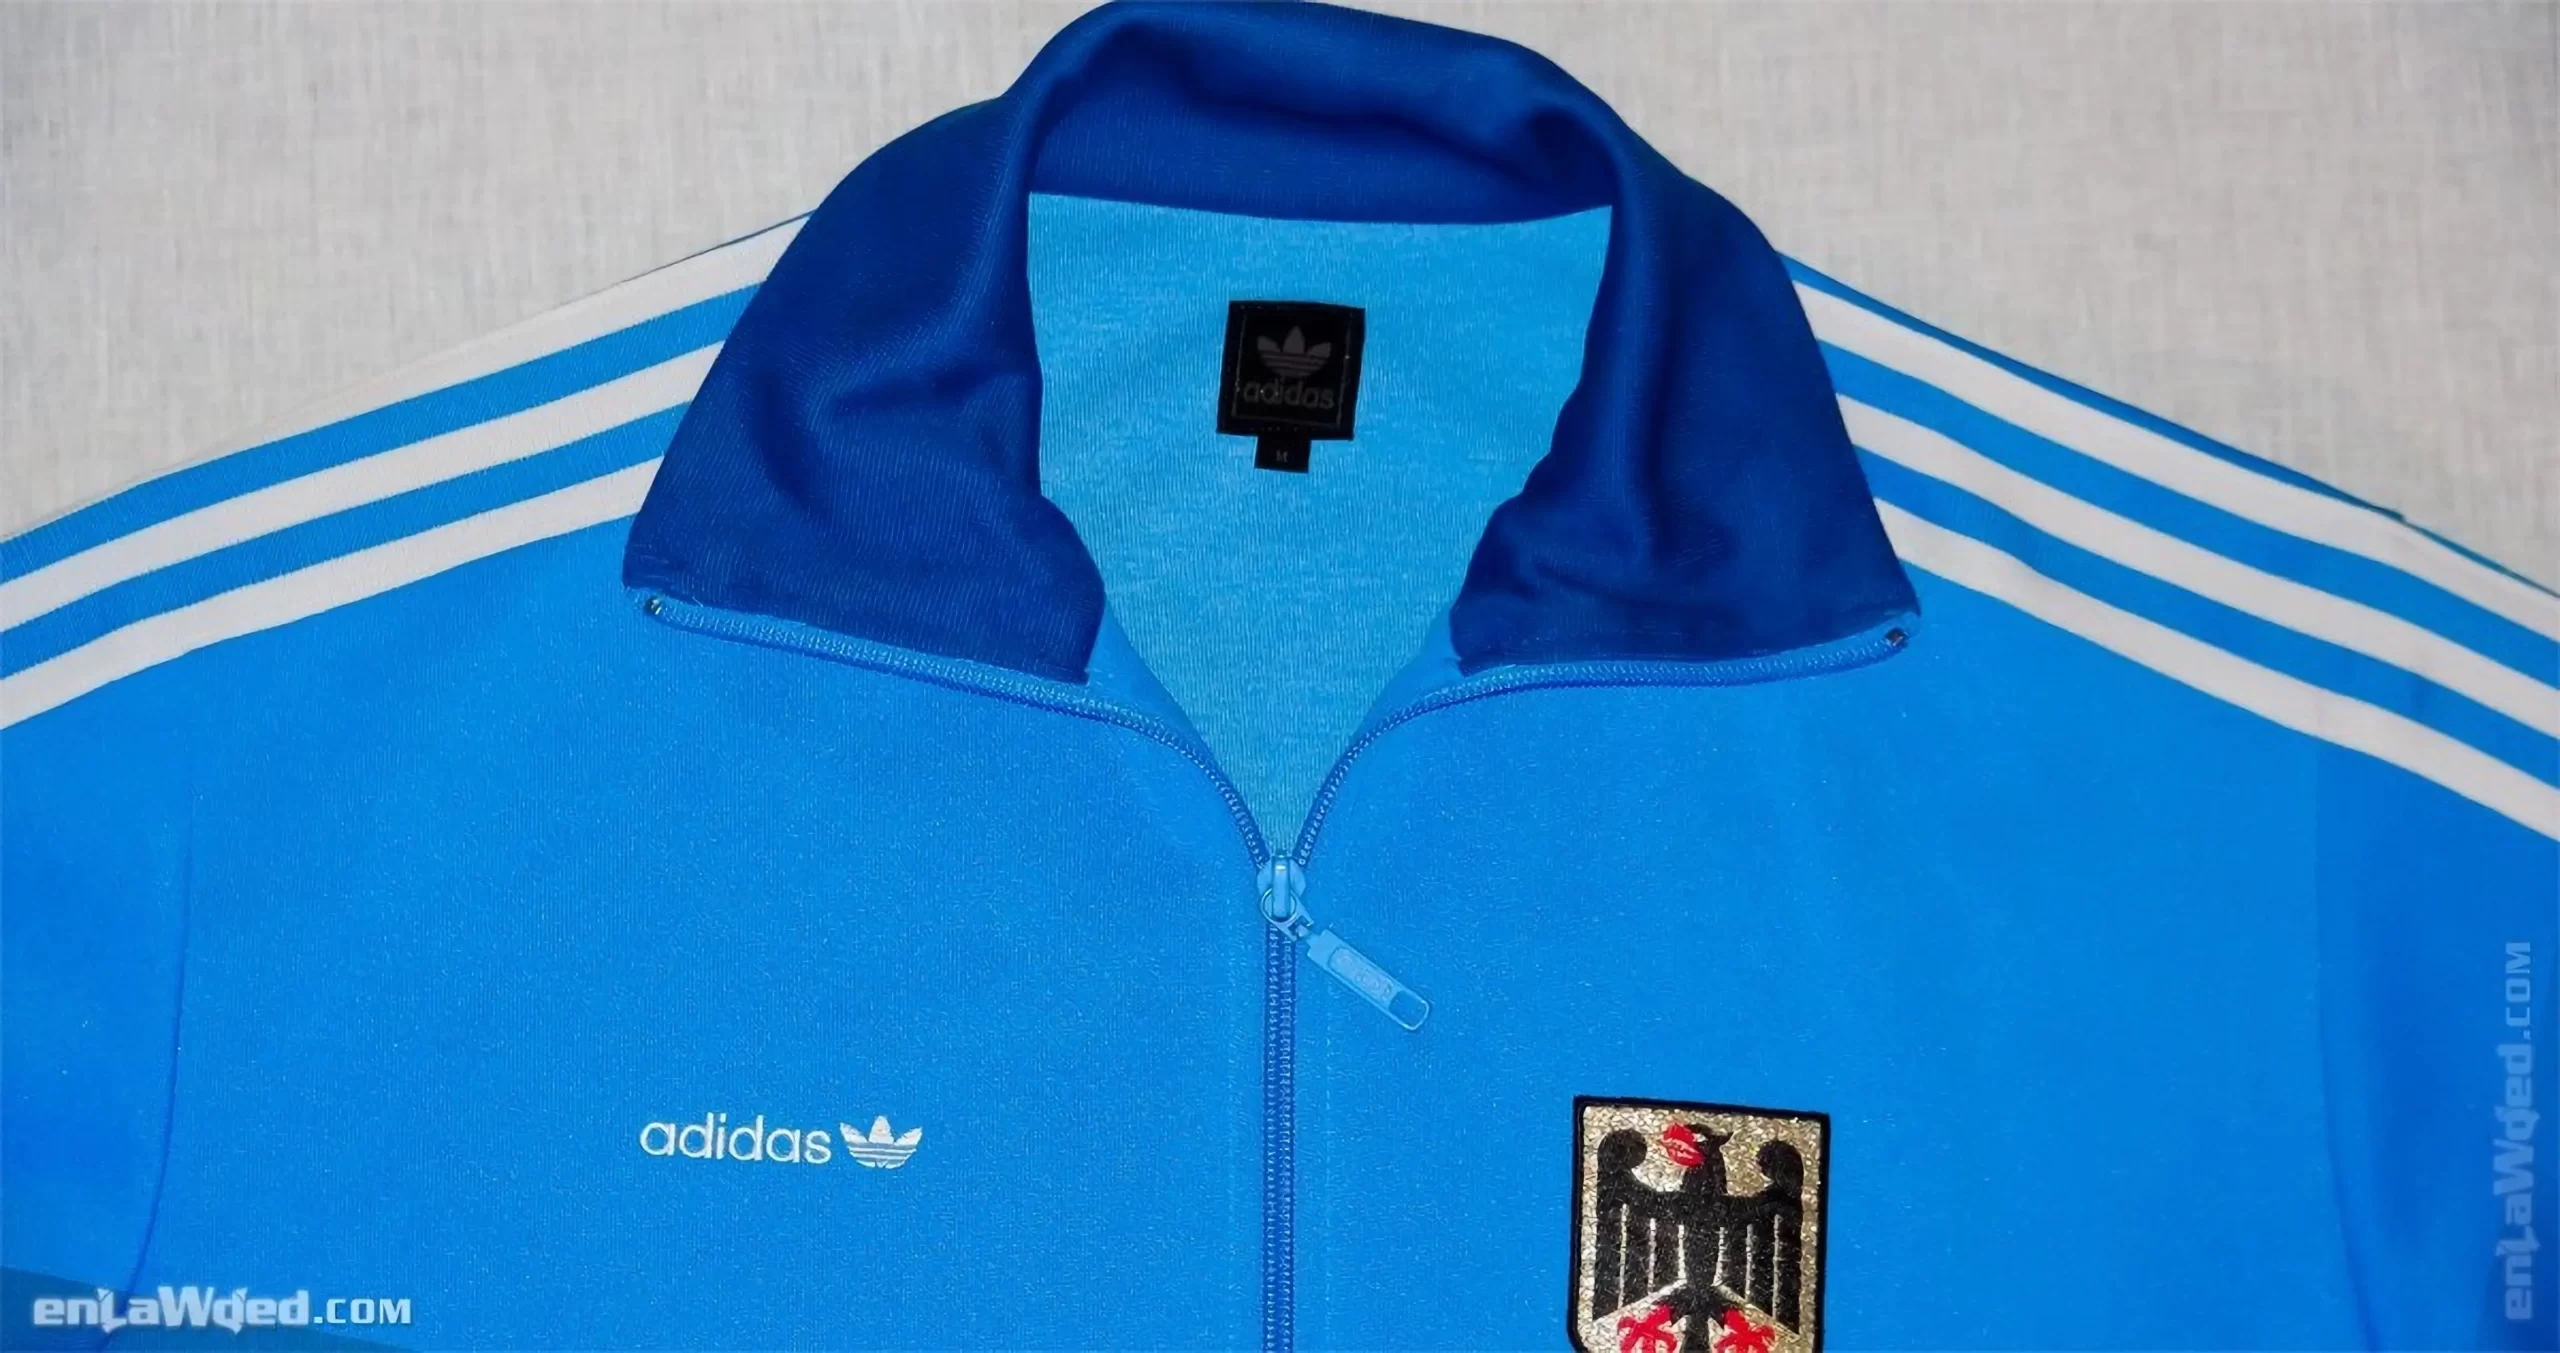 Men’s 2004 West Germany Olympic ’84 TT by Adidas: Interesting (EnLawded.com file #lmc3v5a3kbblckhgj7l)